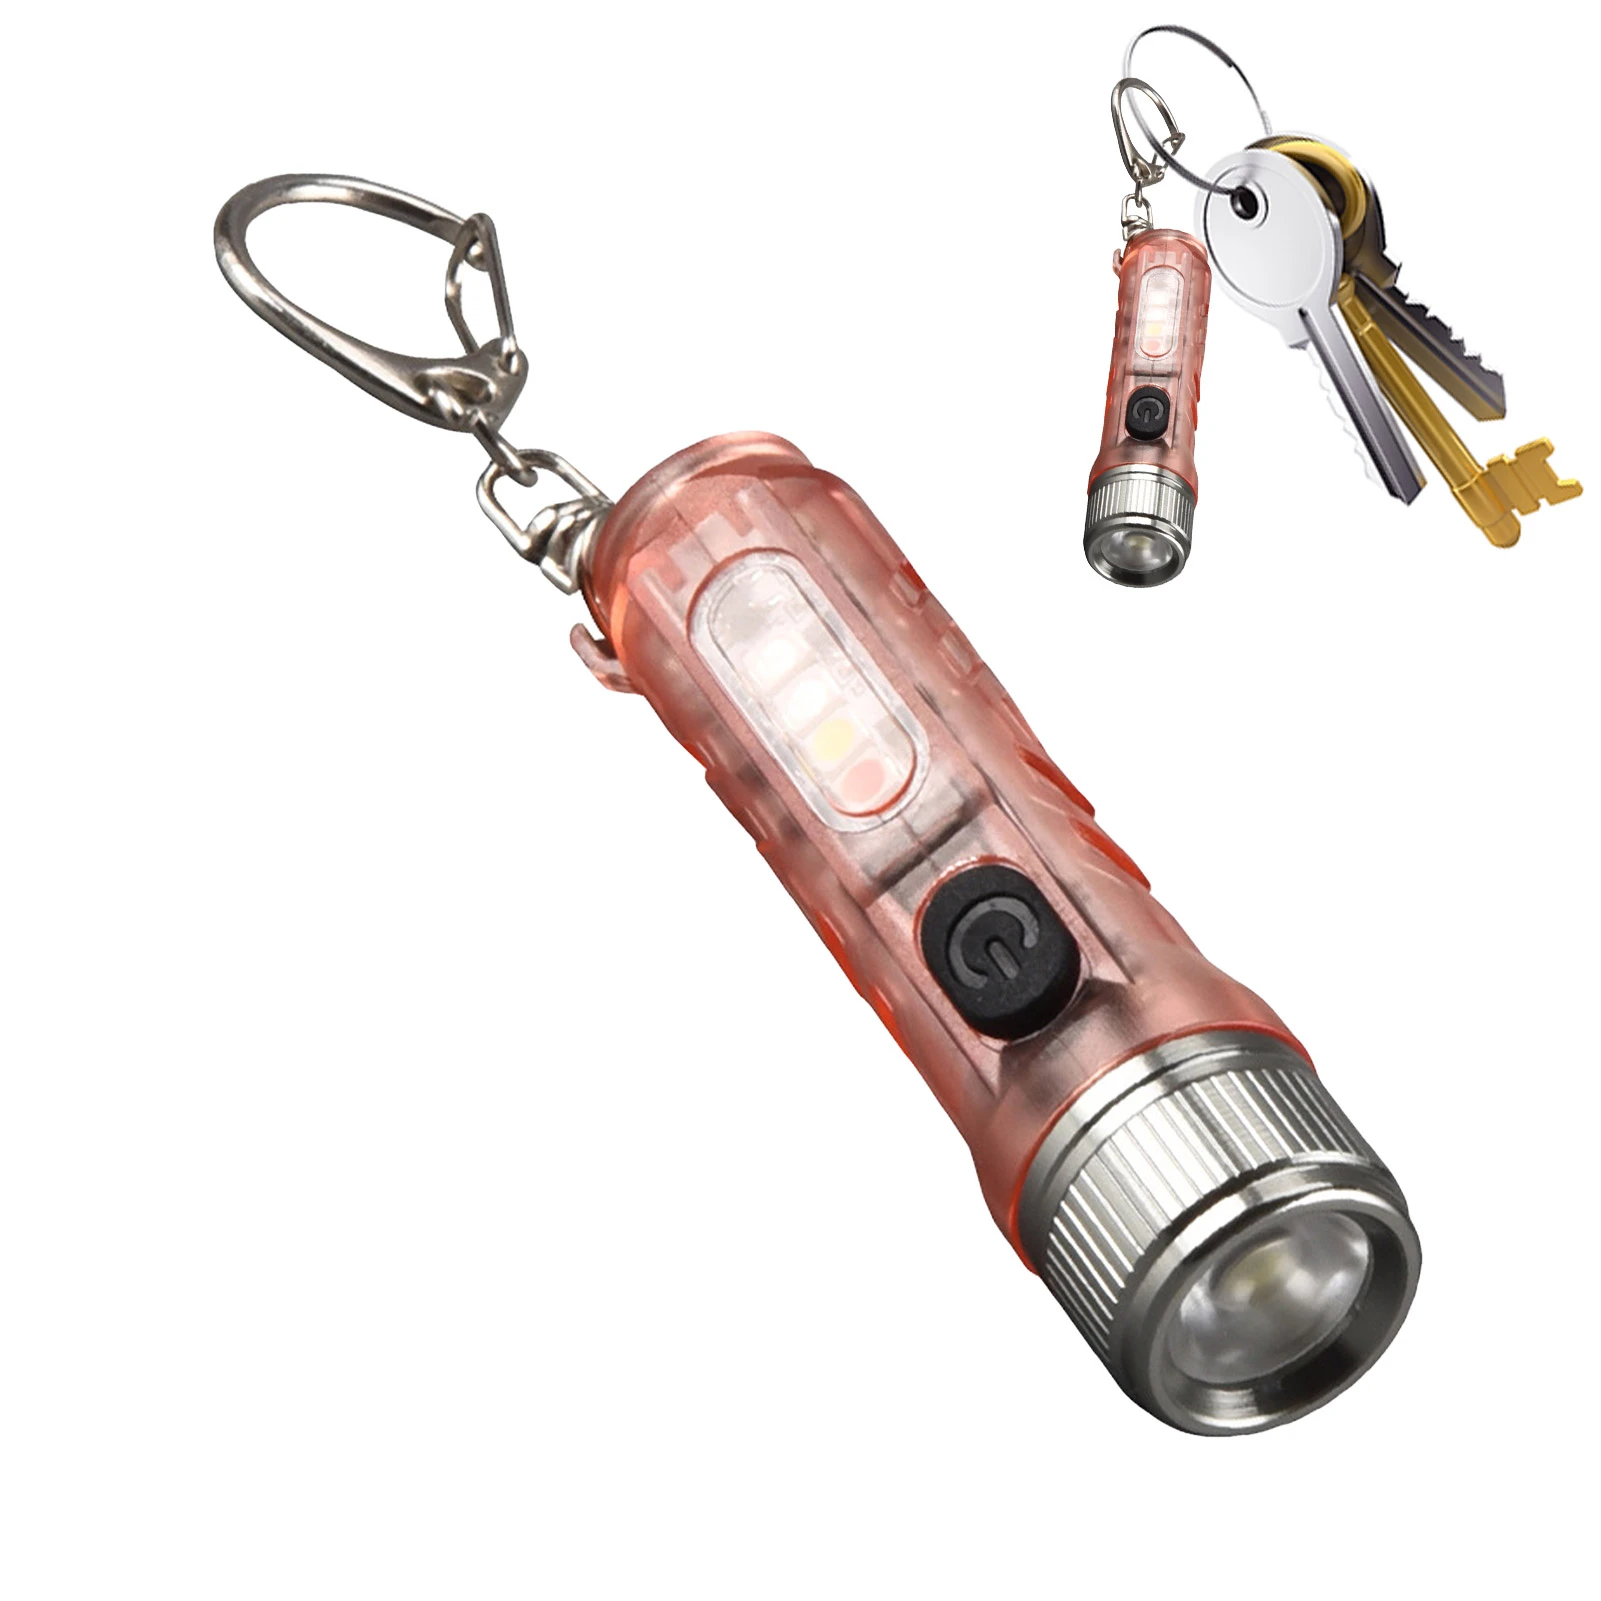 Bestudeer jungle Klagen Mini Led Zaklamp Sleutelhanger Oplaadbare Pocket Led Flash Light Portable  Sleutelhanger Licht Voor Indoor En Outdoor| | - AliExpress